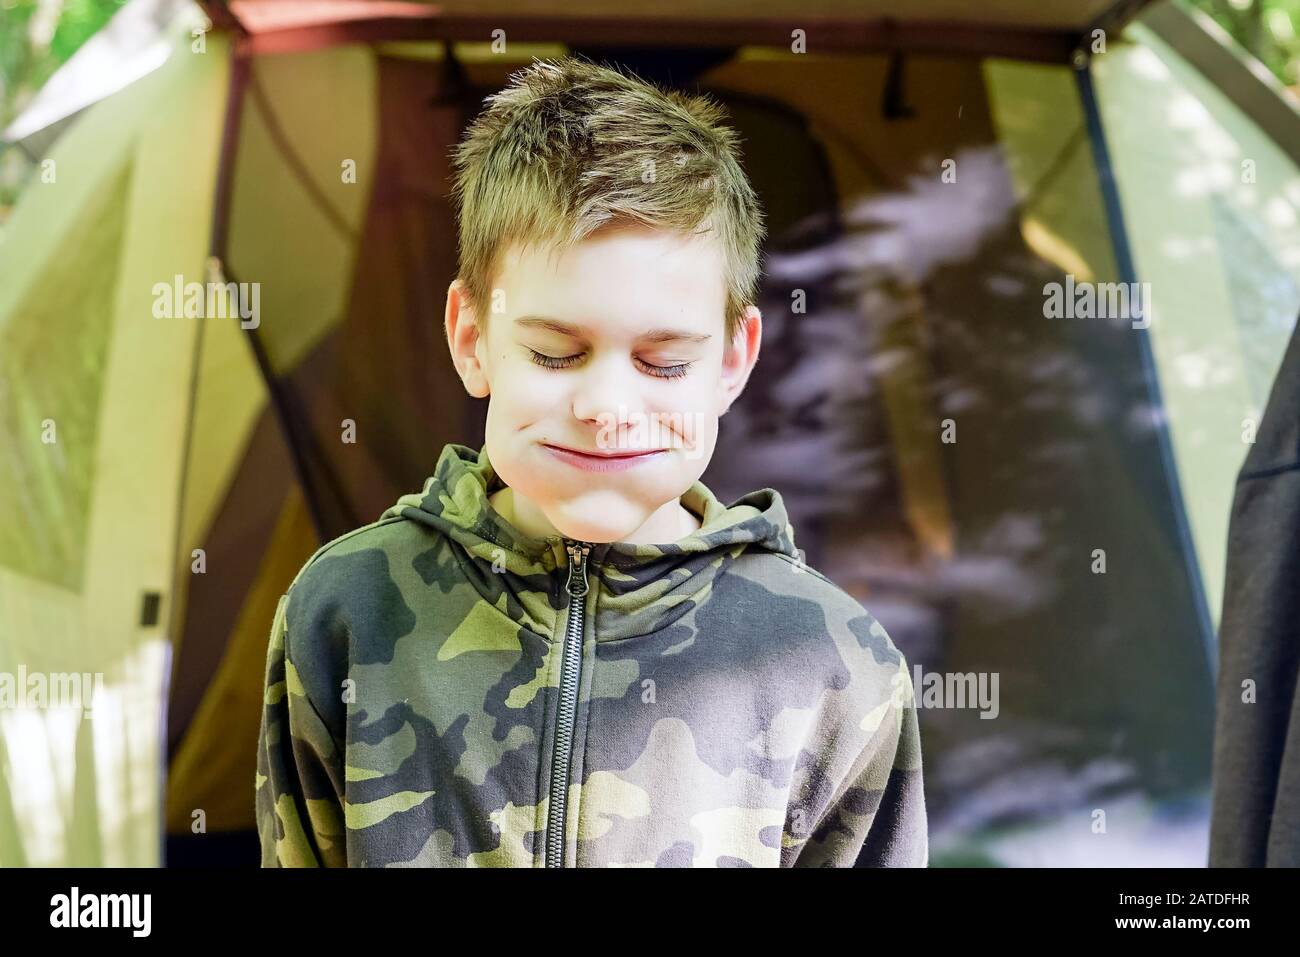 Der Junge beim Picknick machte ein fröhliches Gesicht mit aufgeblasenen Wangen. Stockfoto